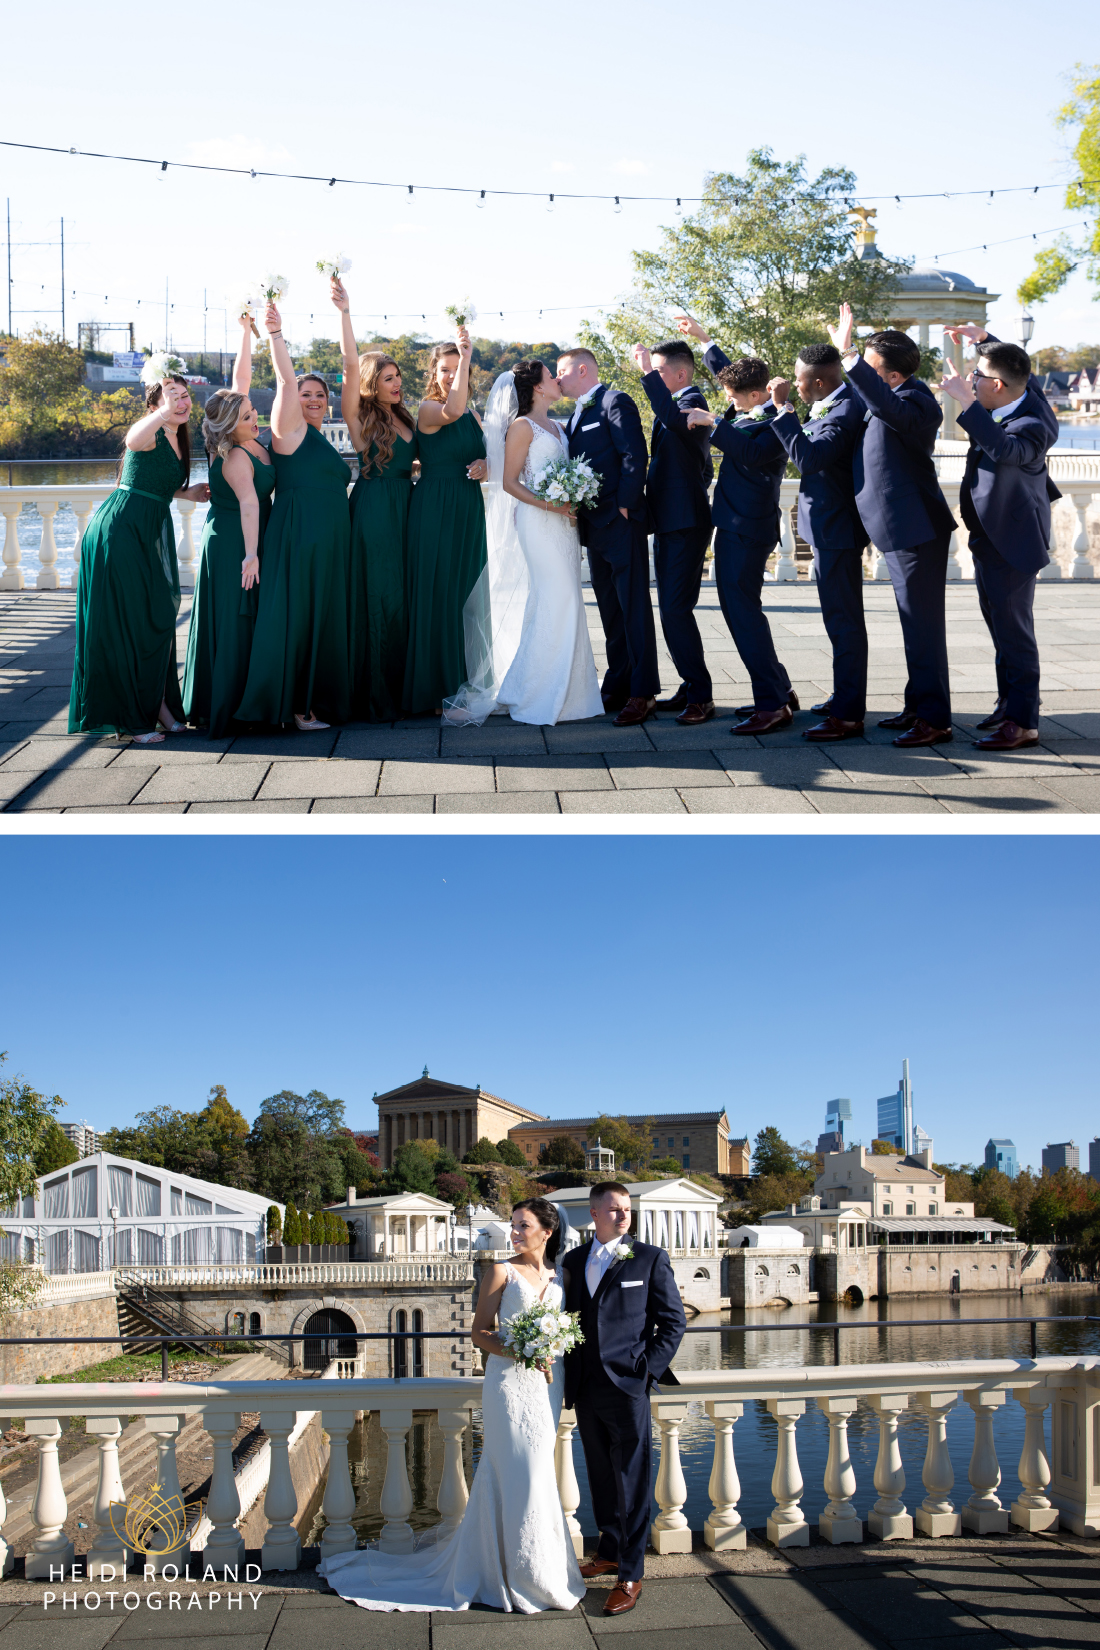 Wedding Party Photos at The Waterworks Philadelphia